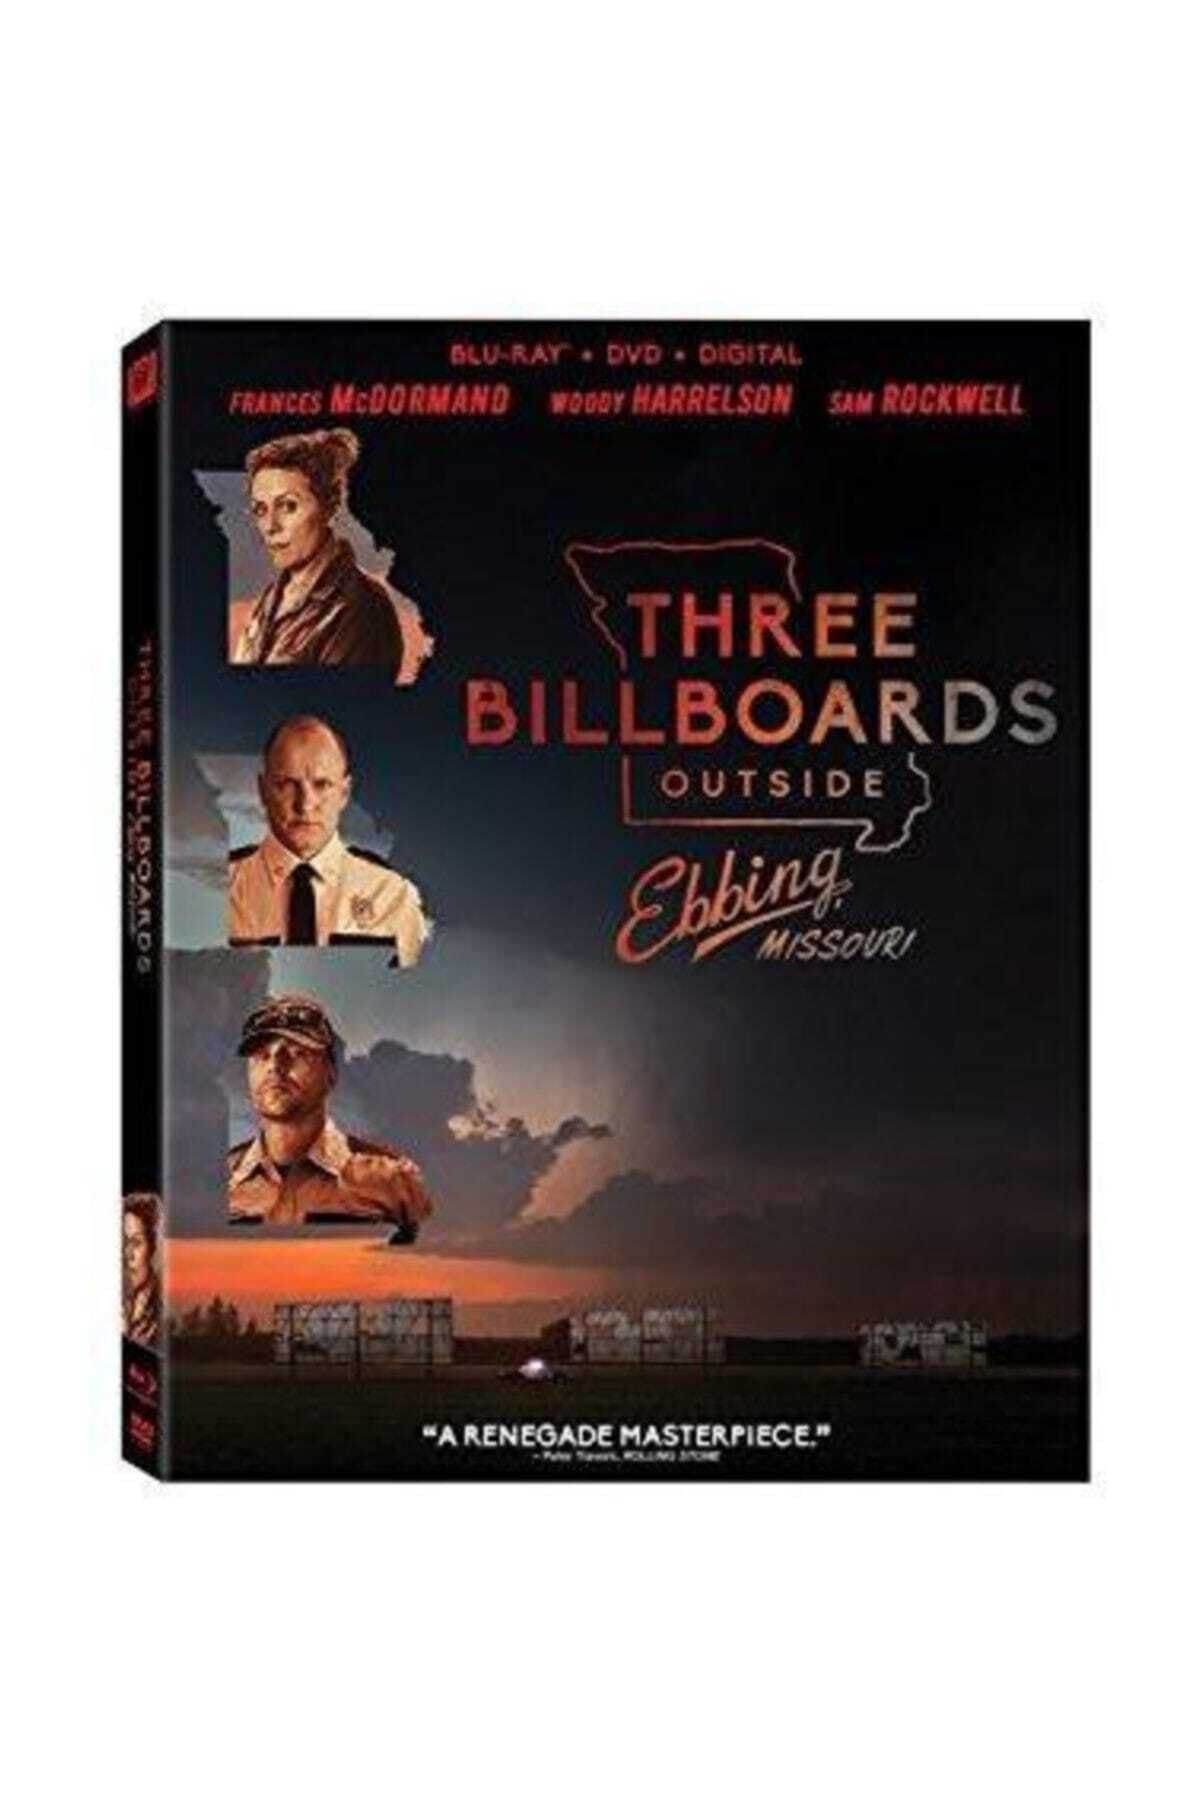 Bir Film Dvd Üç Billboard Ebbing Çıkışı, Miss / Three Bıllboards Outsıde Ebbıng, Mıssourı